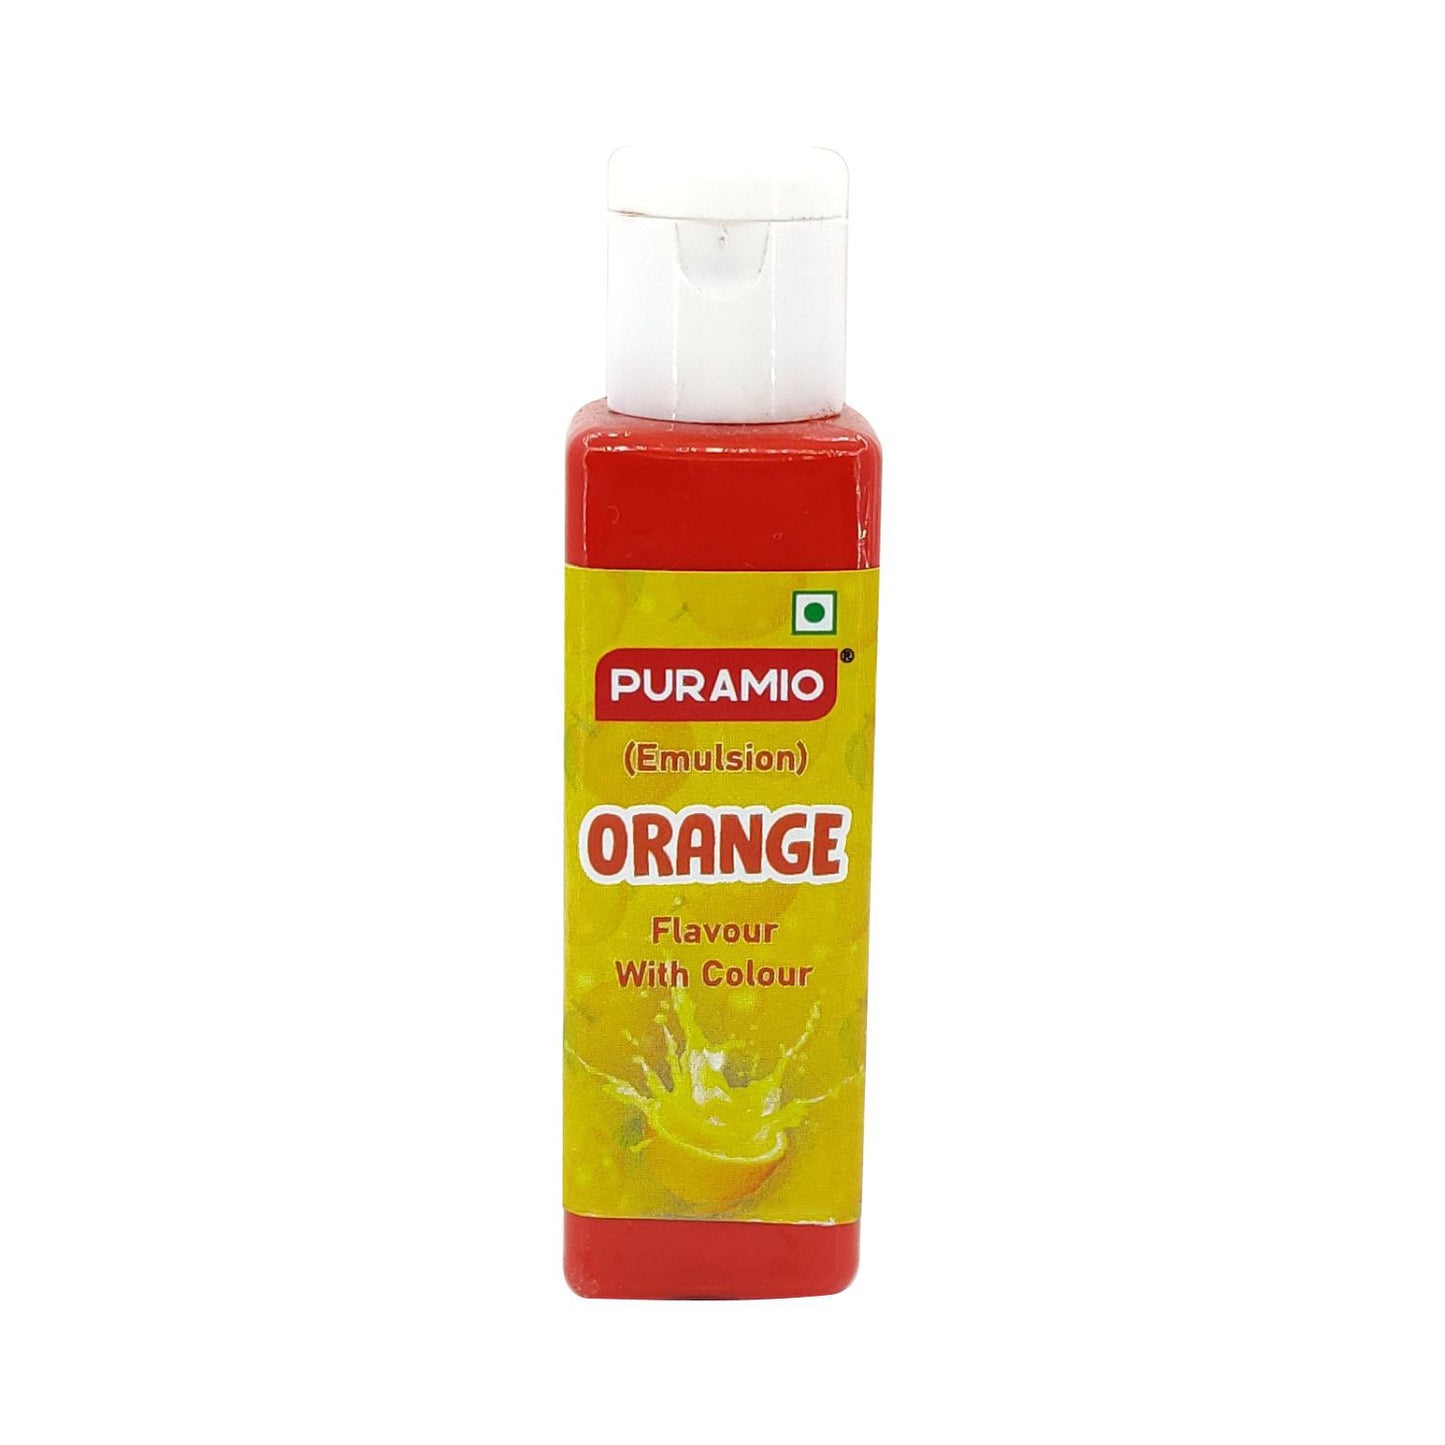 Puramio Orange - Flavour with Colour (Emulsion)